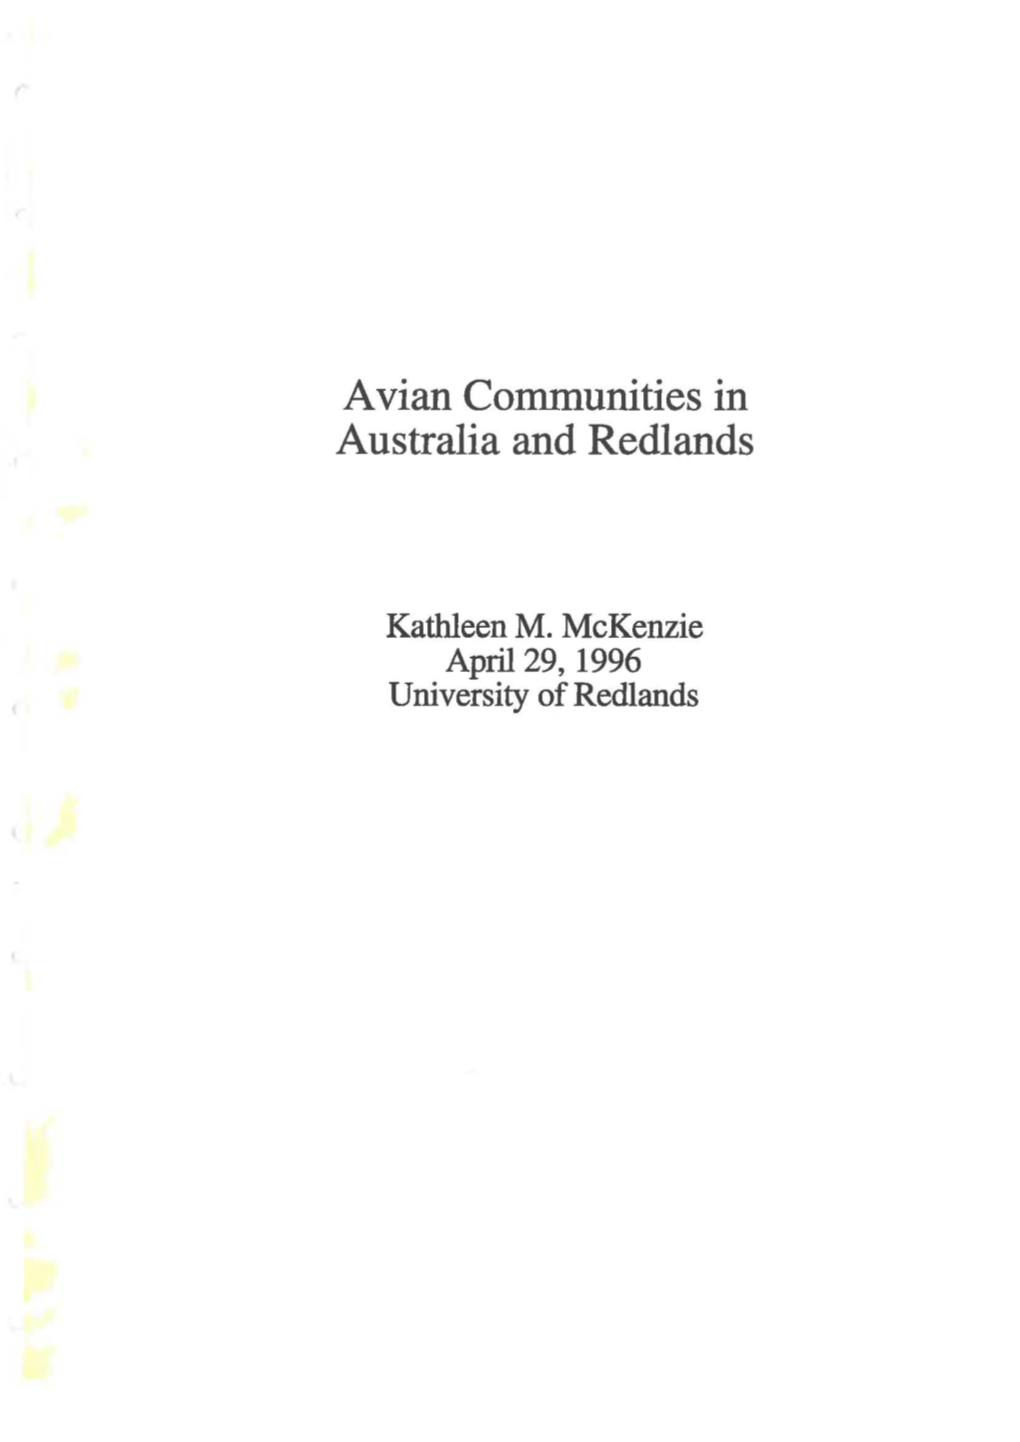 Avian Communities in Australia and Redlands